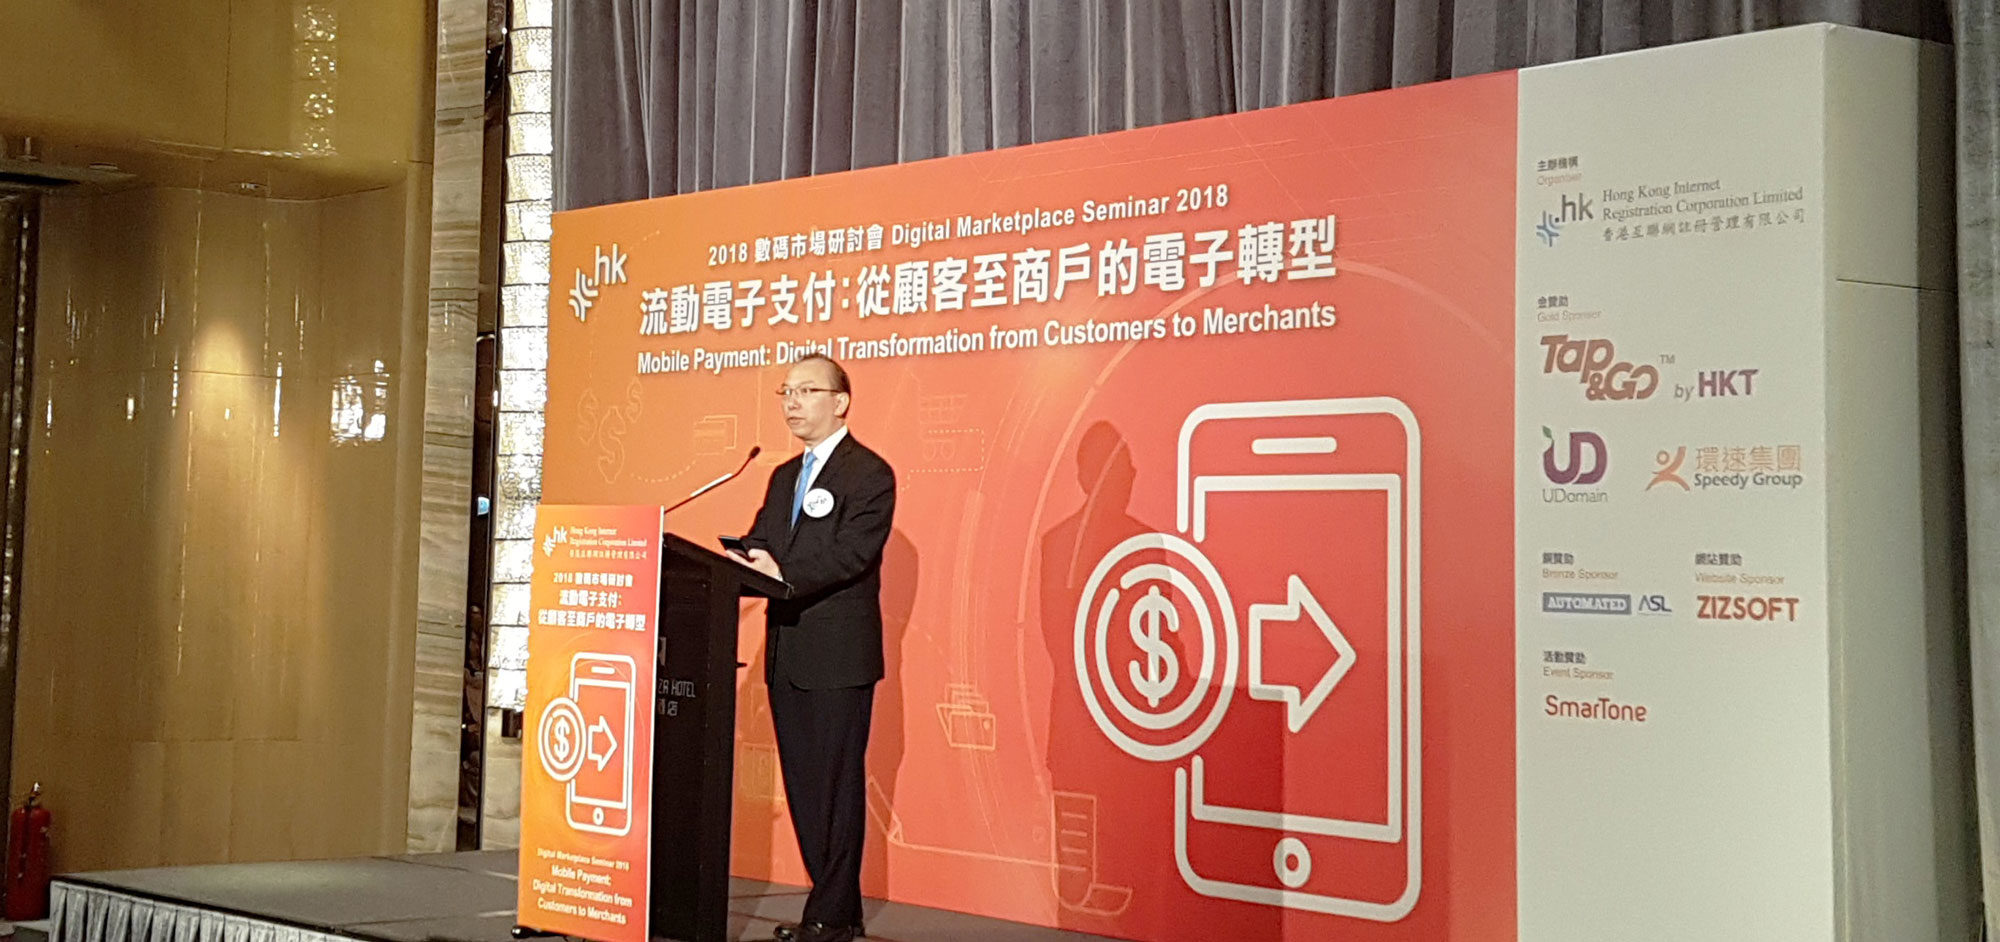 政府資訊科技總監林偉喬先生於數碼市場研討會「流動電子支付：從顧客至商戶的電子轉型」上致辭